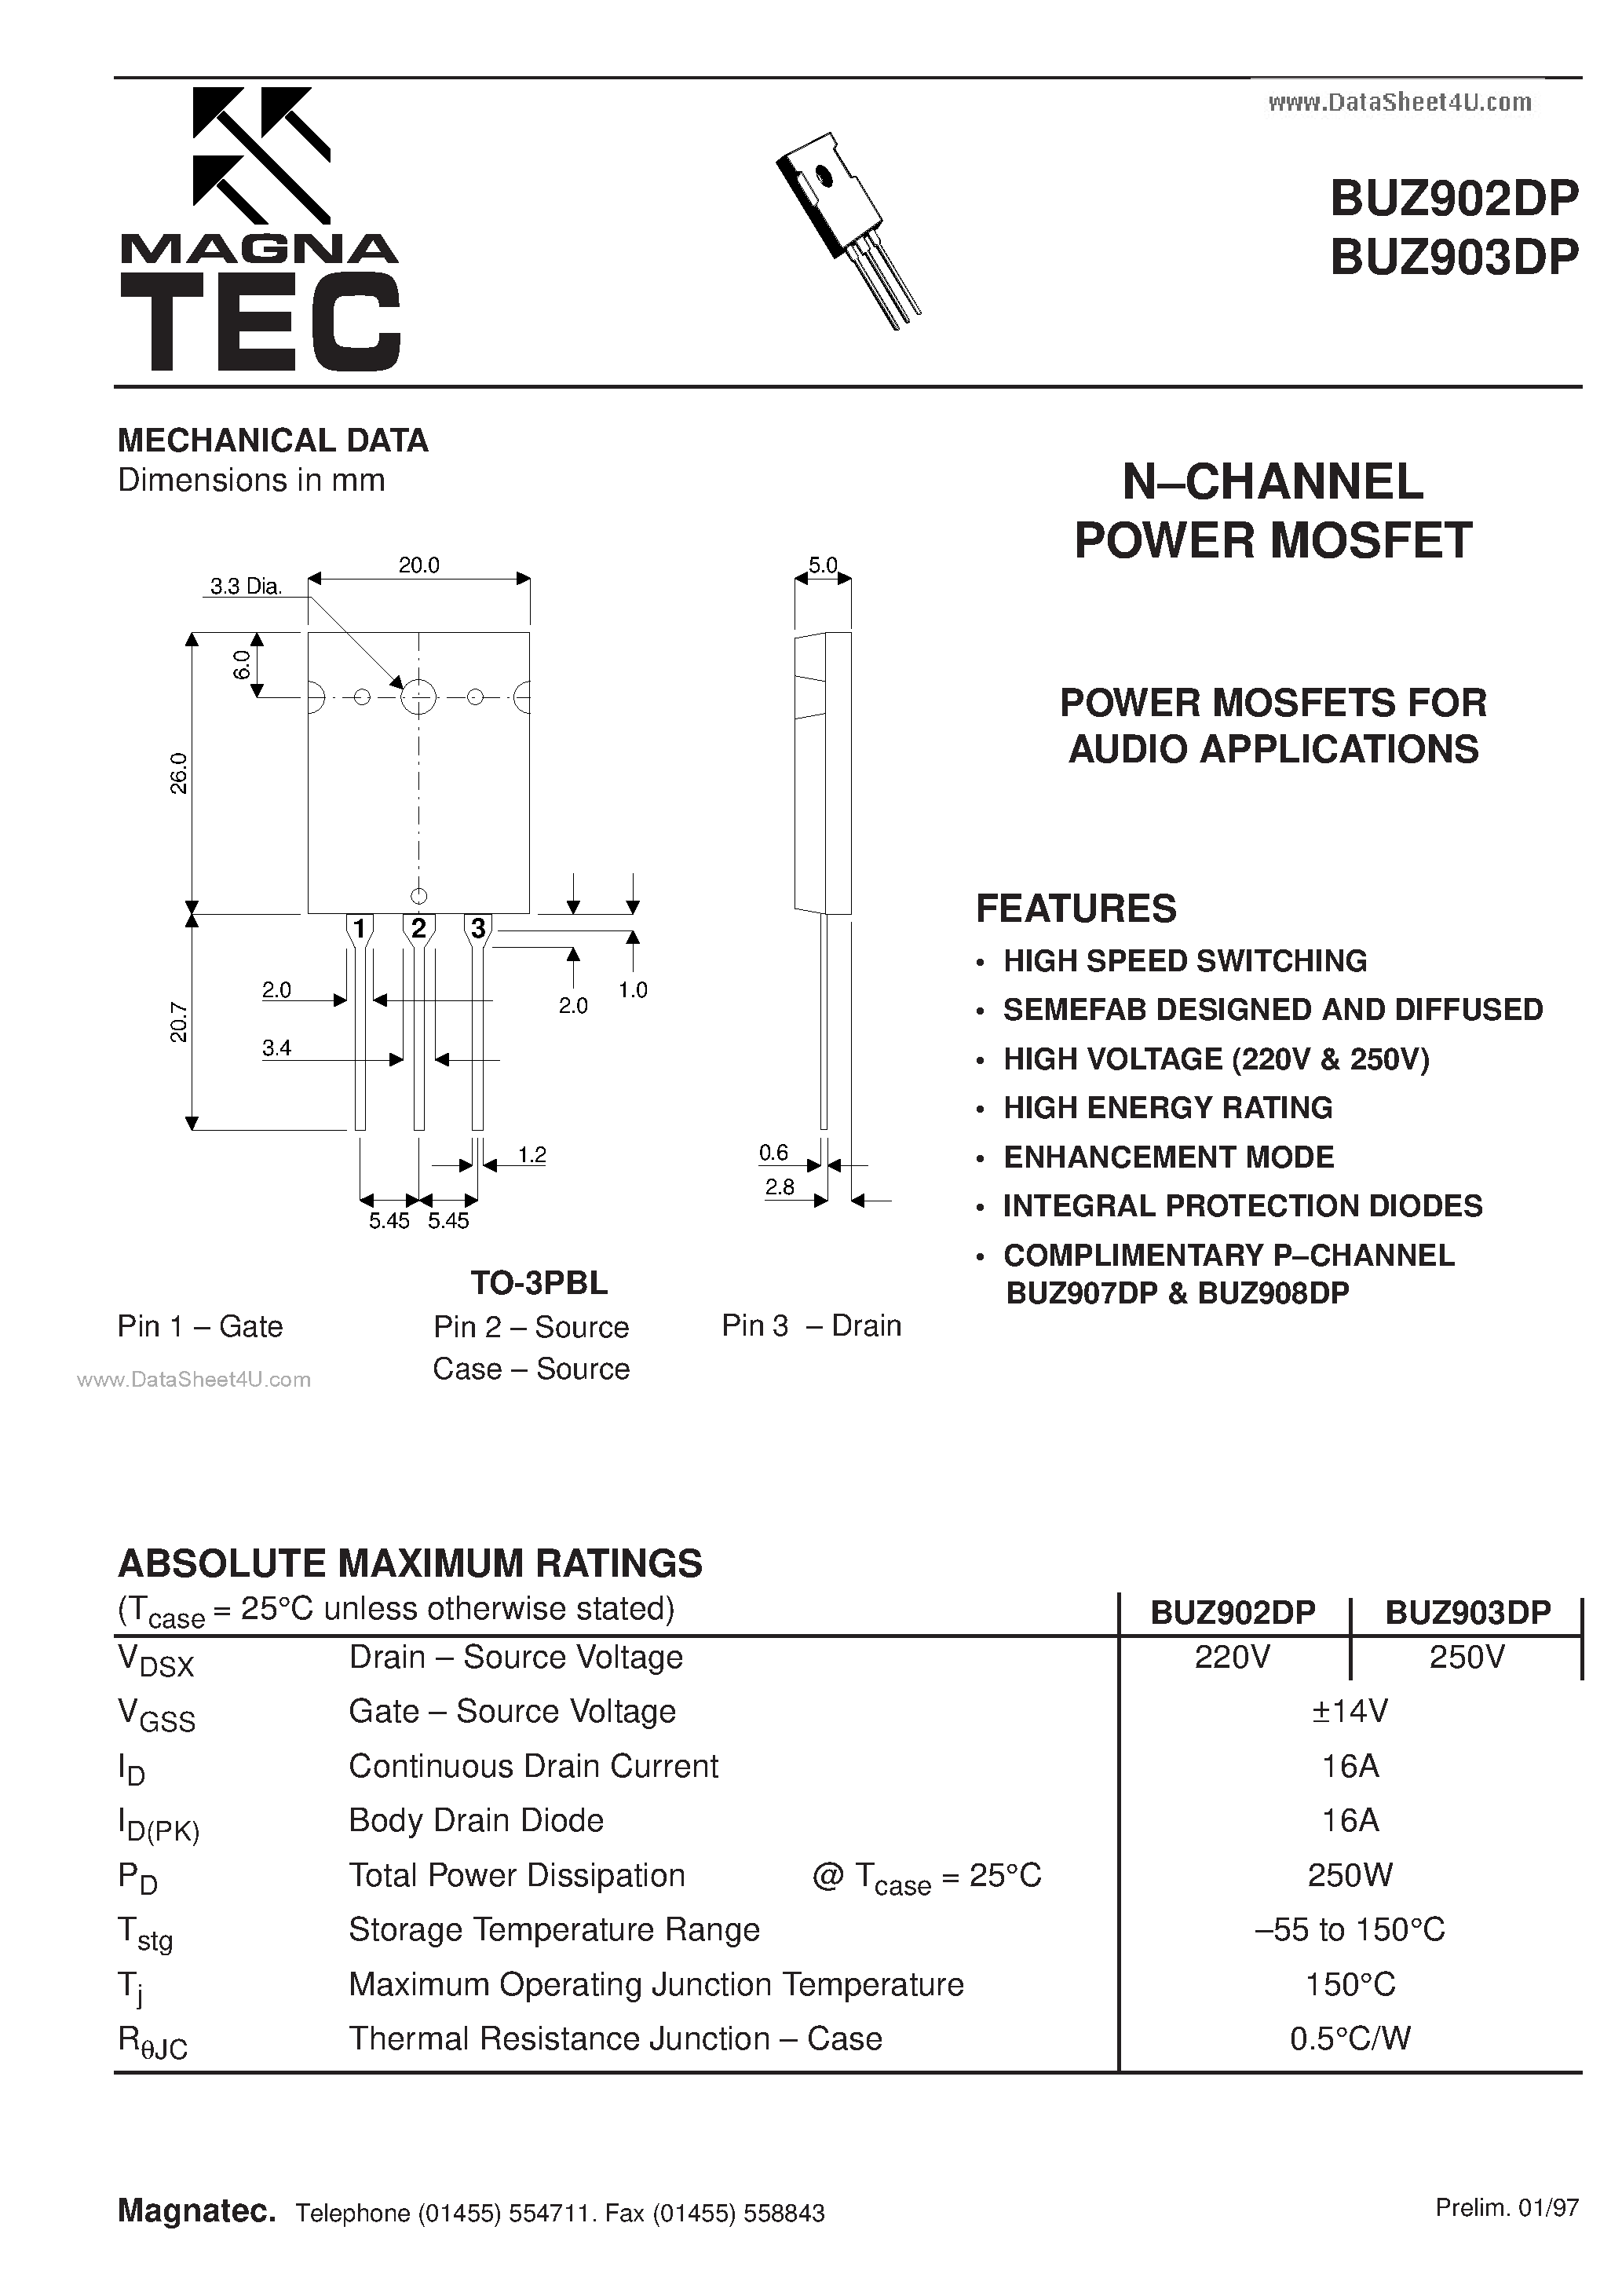 Даташит BUZ902DP - (BUZ902DP / BUZ903DP) N CHANNEL POWER MOSFET страница 1